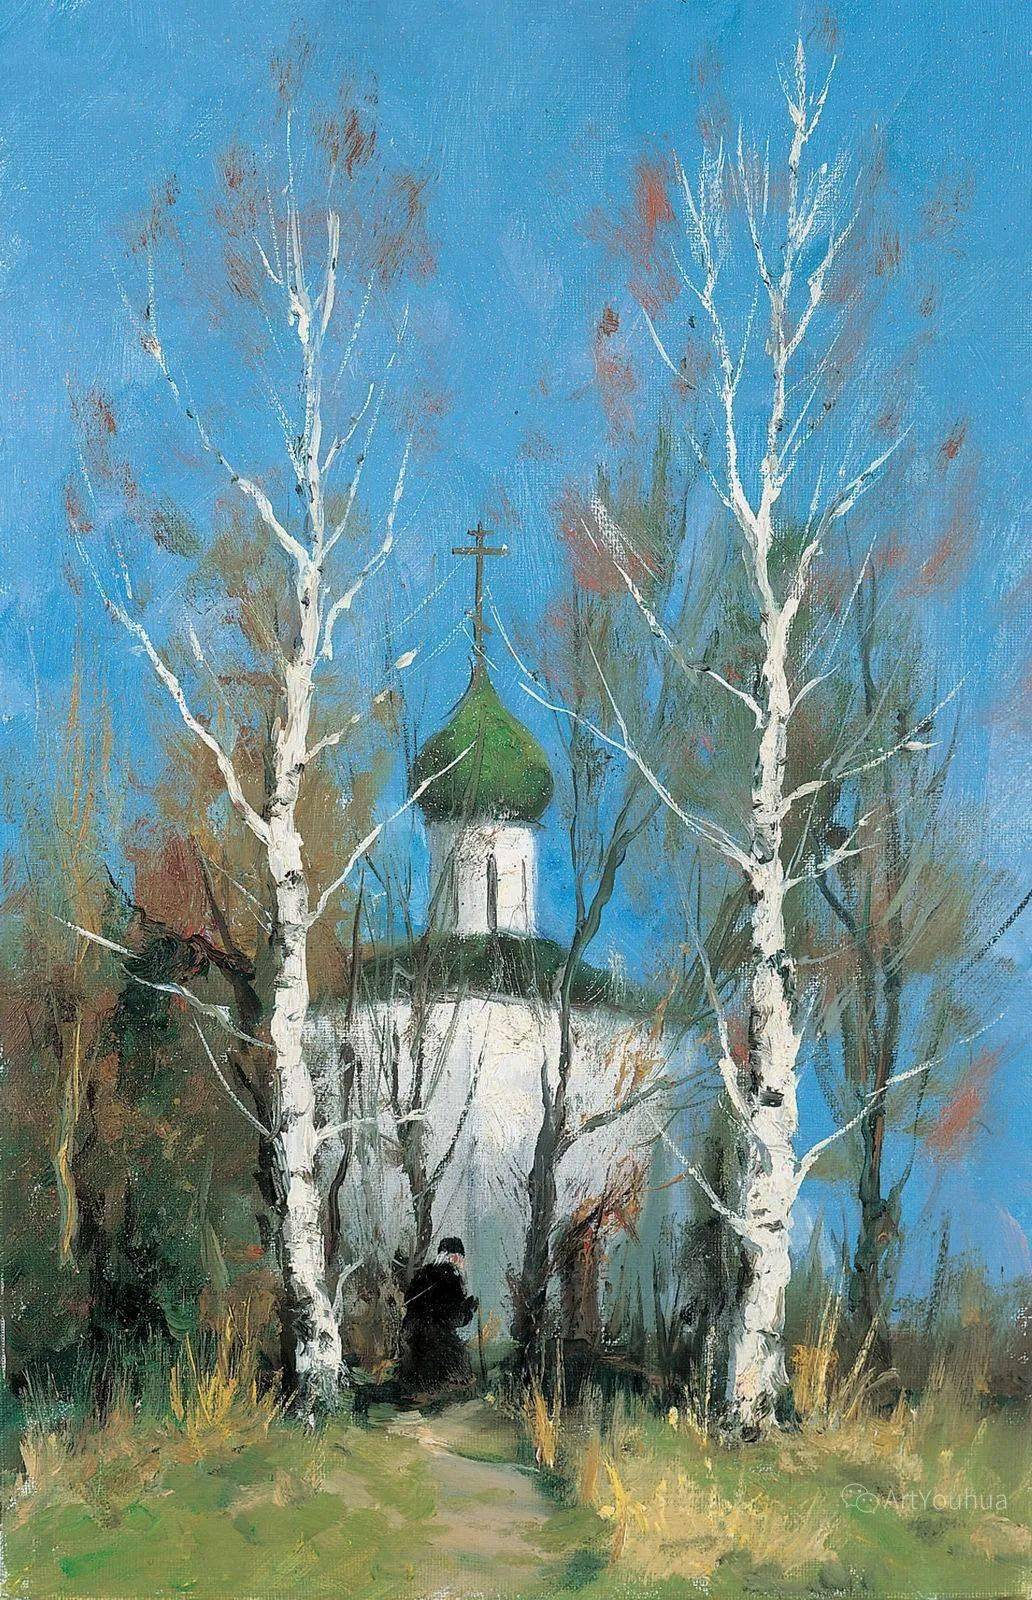 长竖构图风景油画,俄罗斯画家谢尔盖·图图诺夫作品